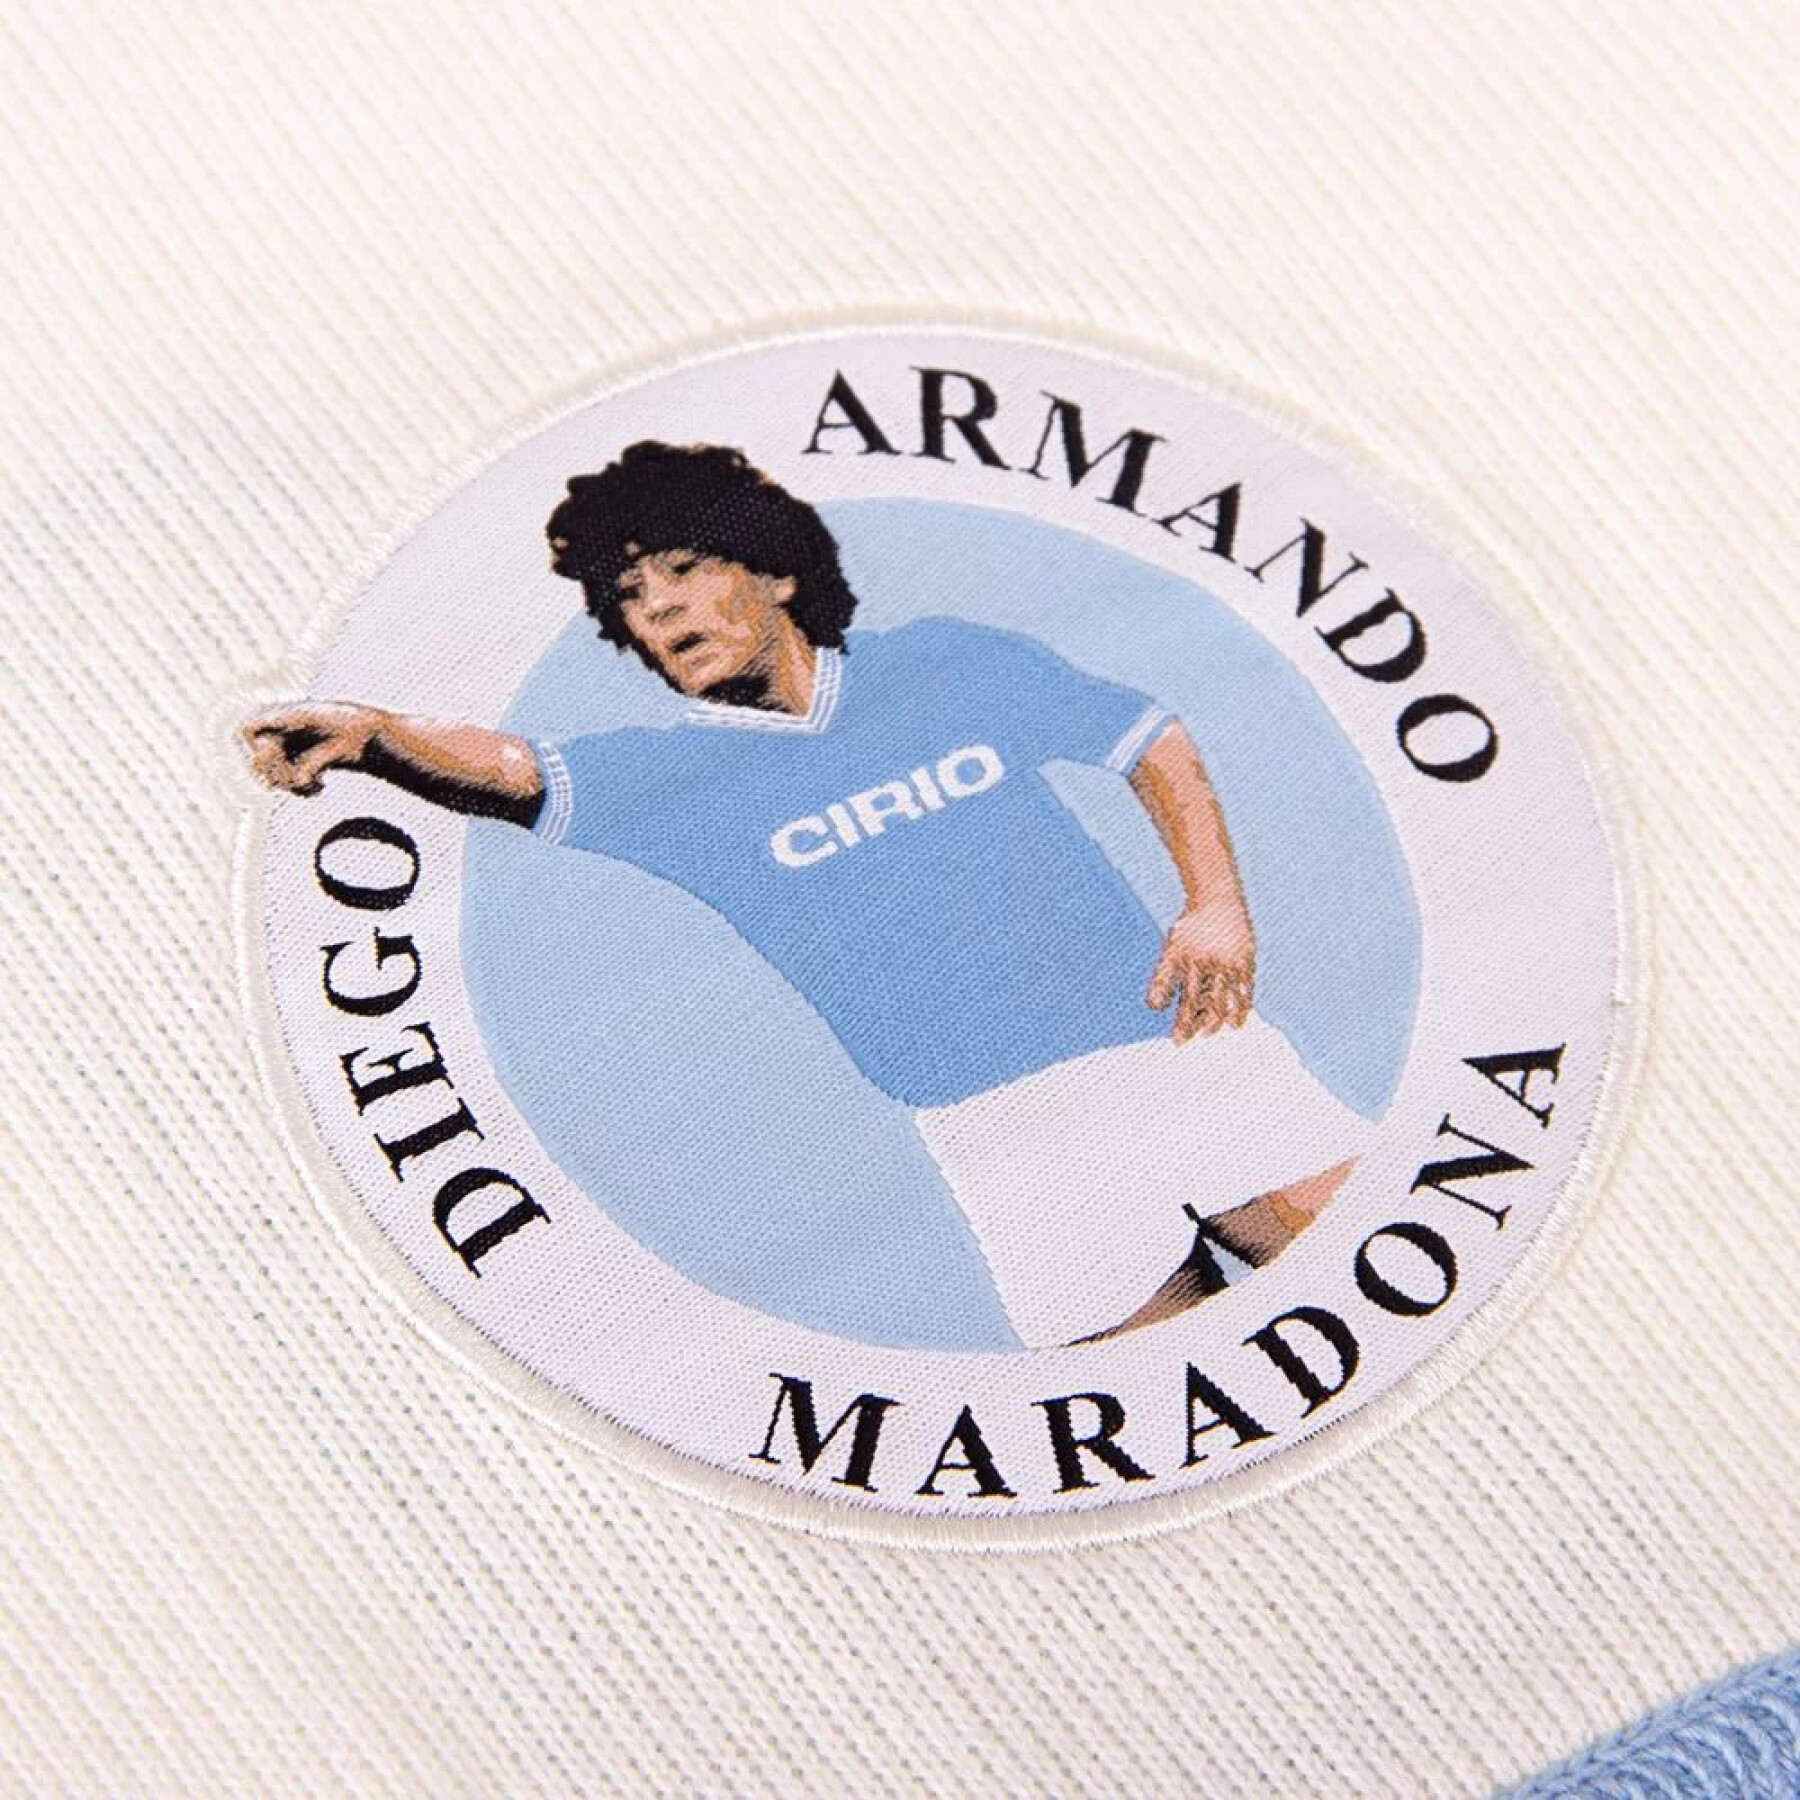 Jersey Copa Maradona SSC Napoli 1984 Retro